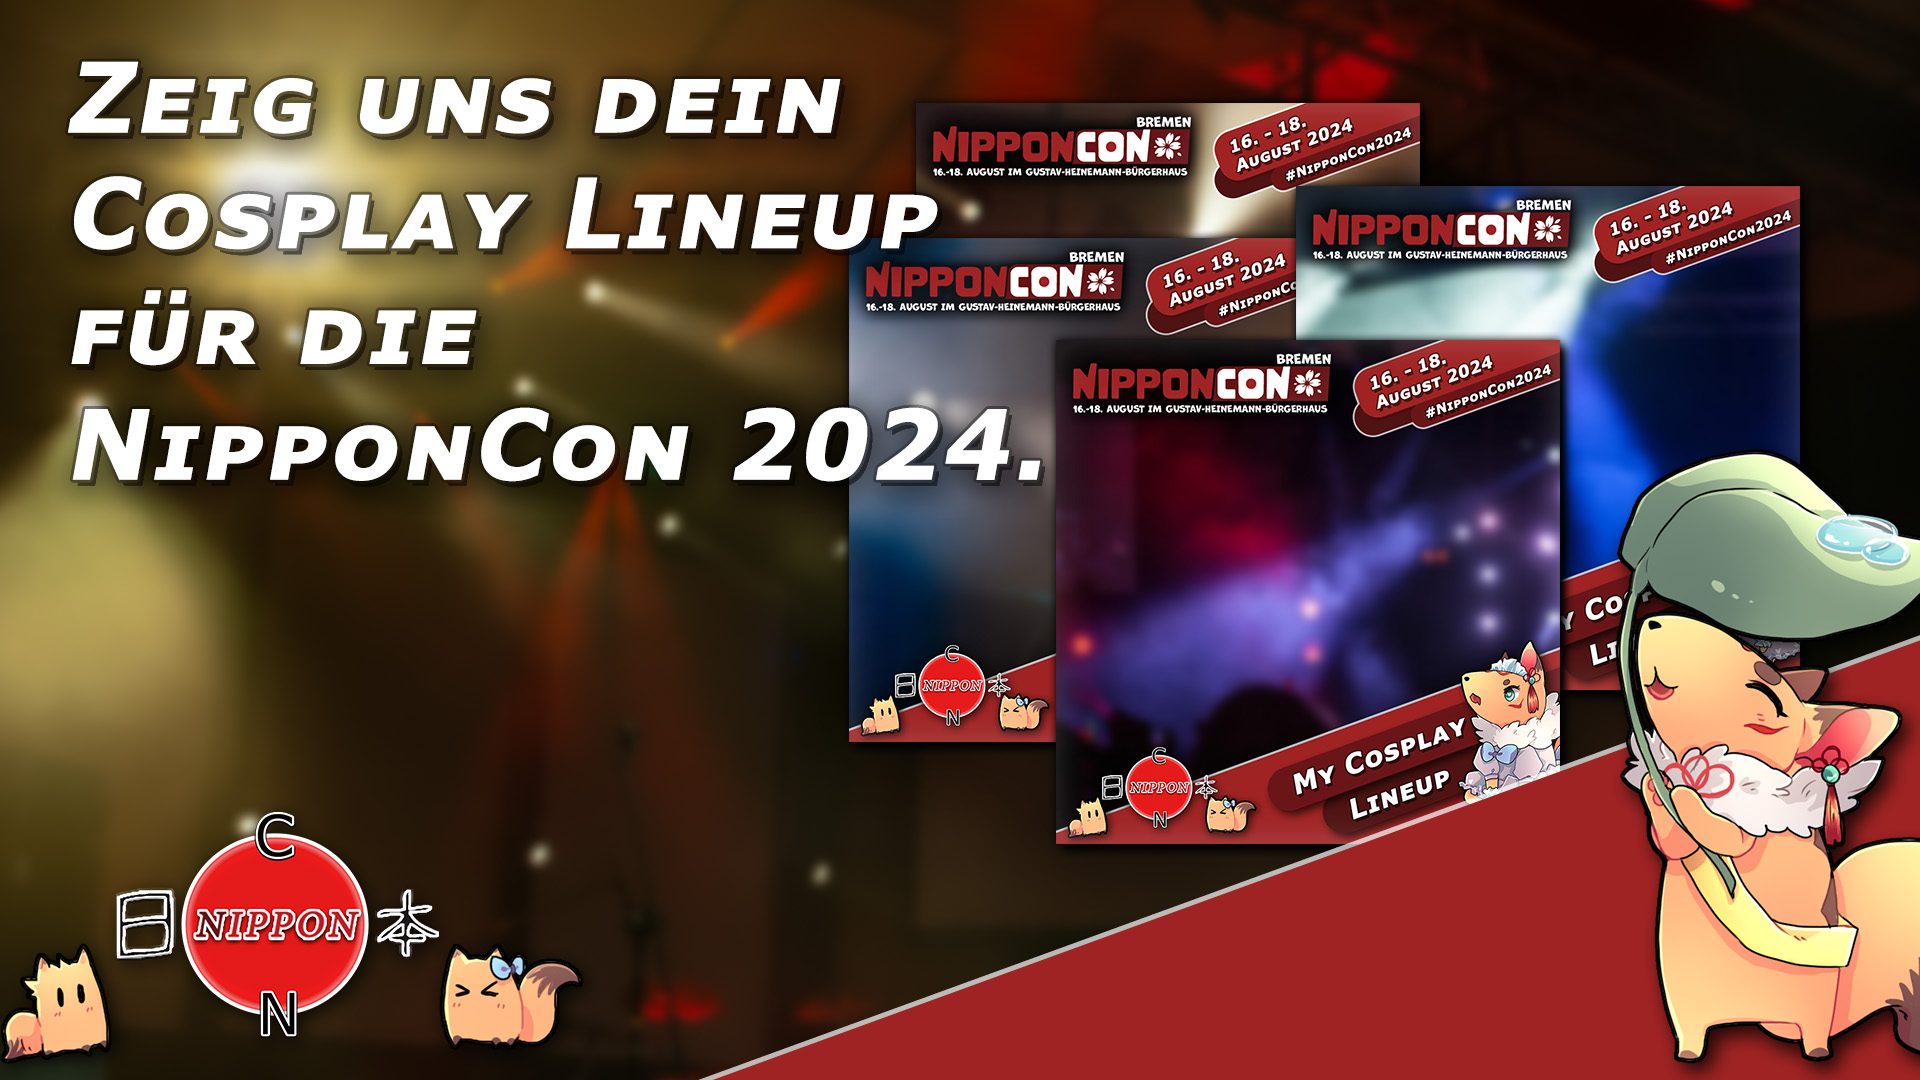 Zeig uns dein Cosplay Lineup für die NipponCon 2024.